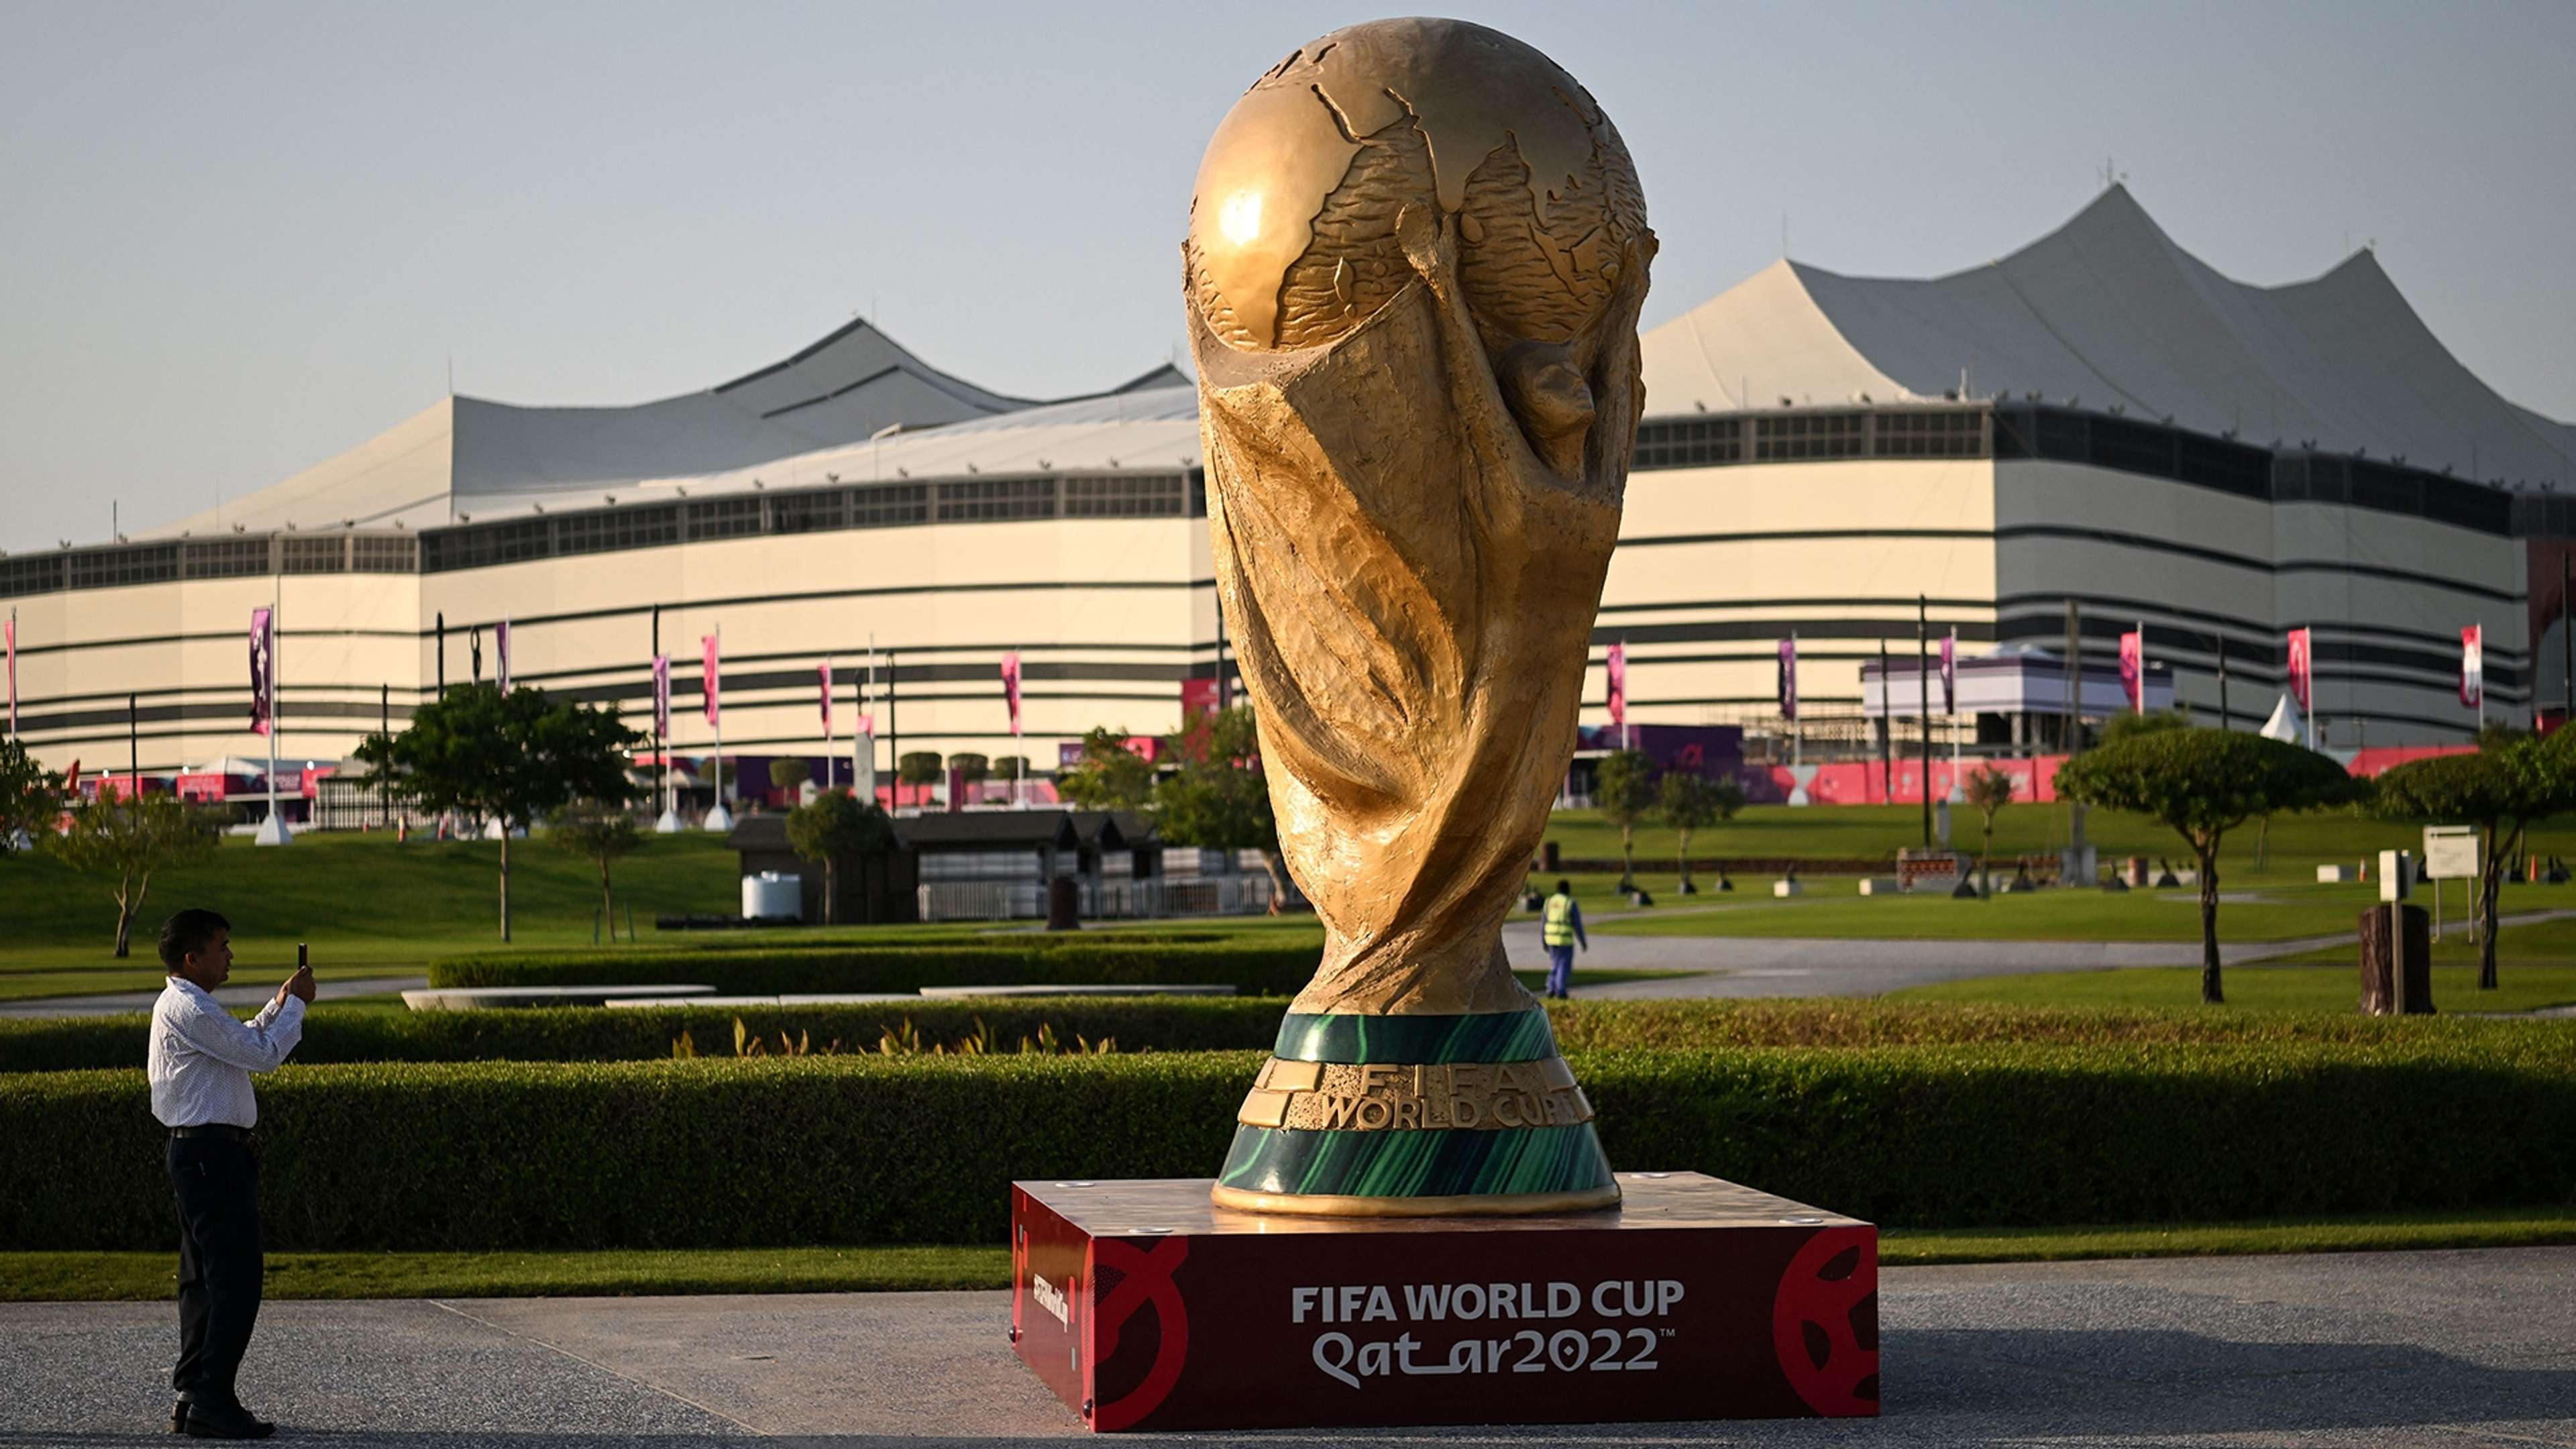 Qatar World Cup 2022 trophy